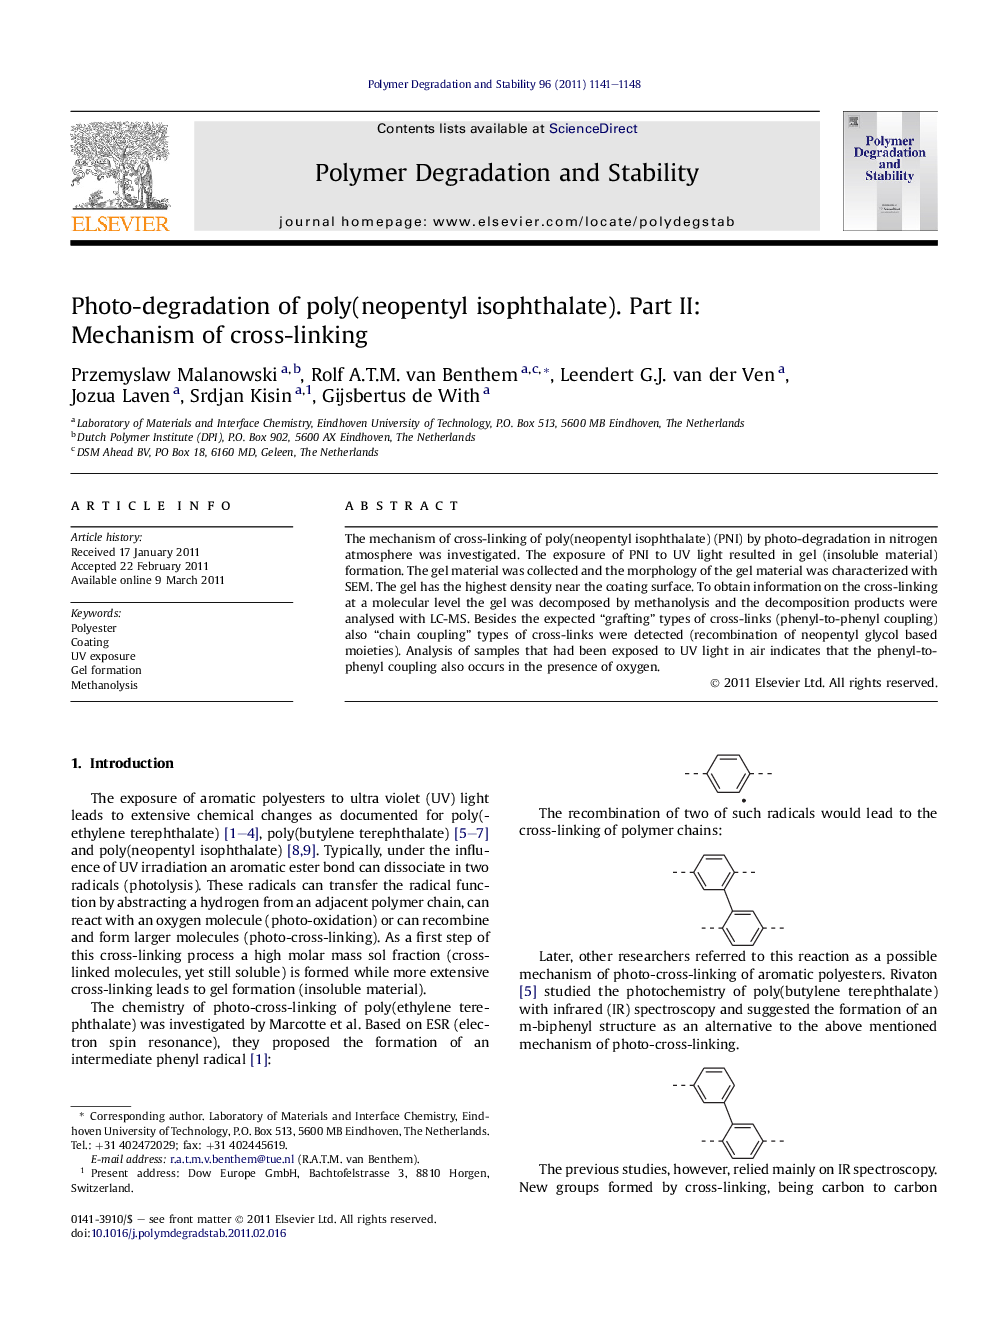 Photo-degradation of poly(neopentyl isophthalate). Part II: Mechanism of cross-linking